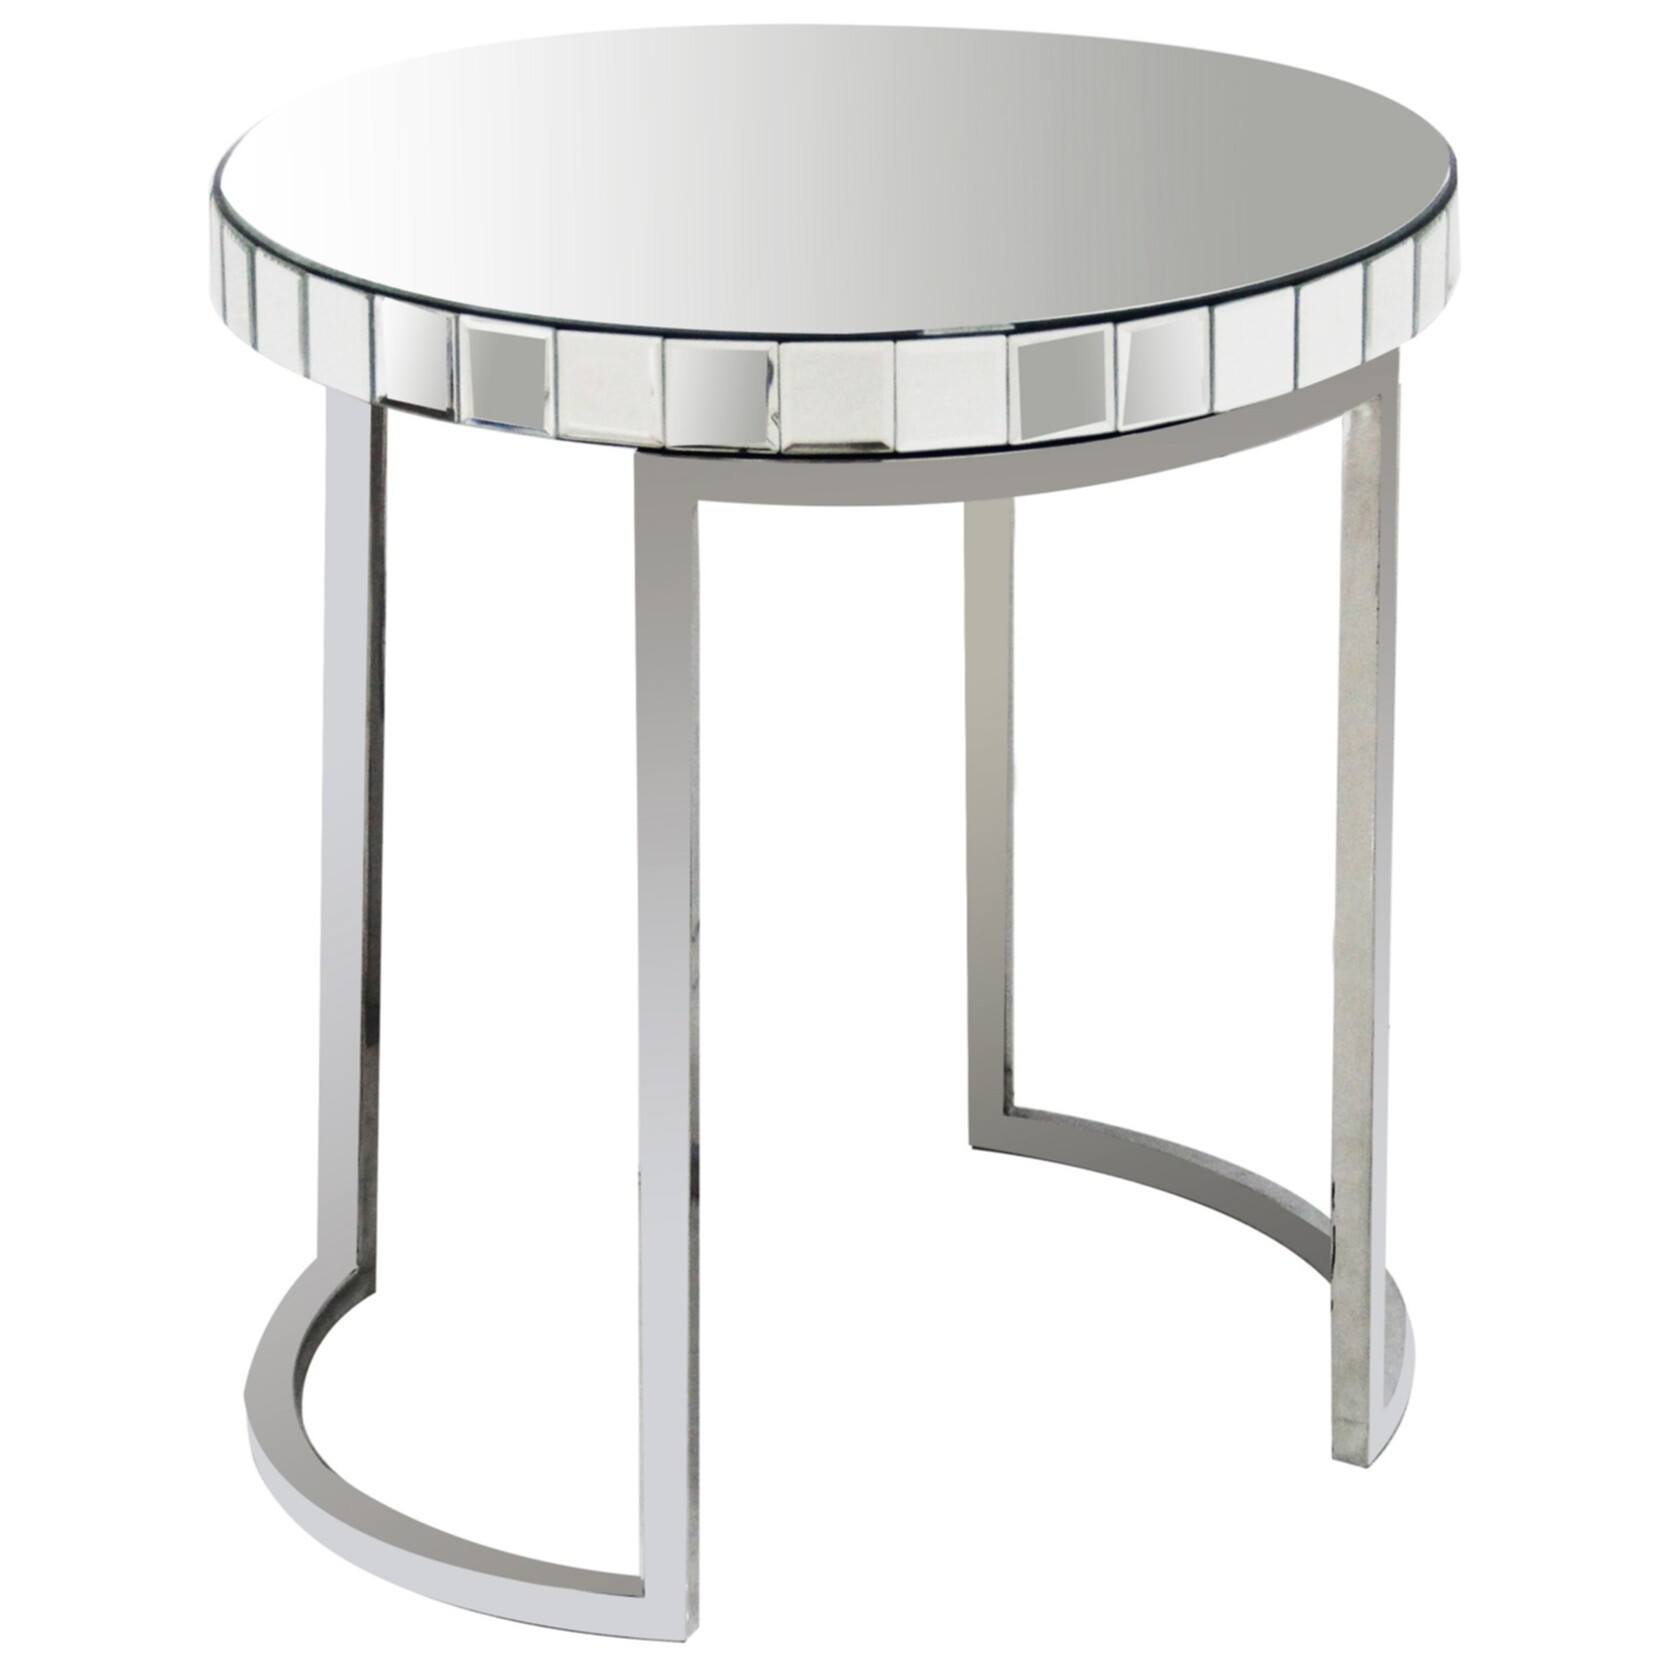 Приставной столик зеркальный круглый с ножками хром Soltanto